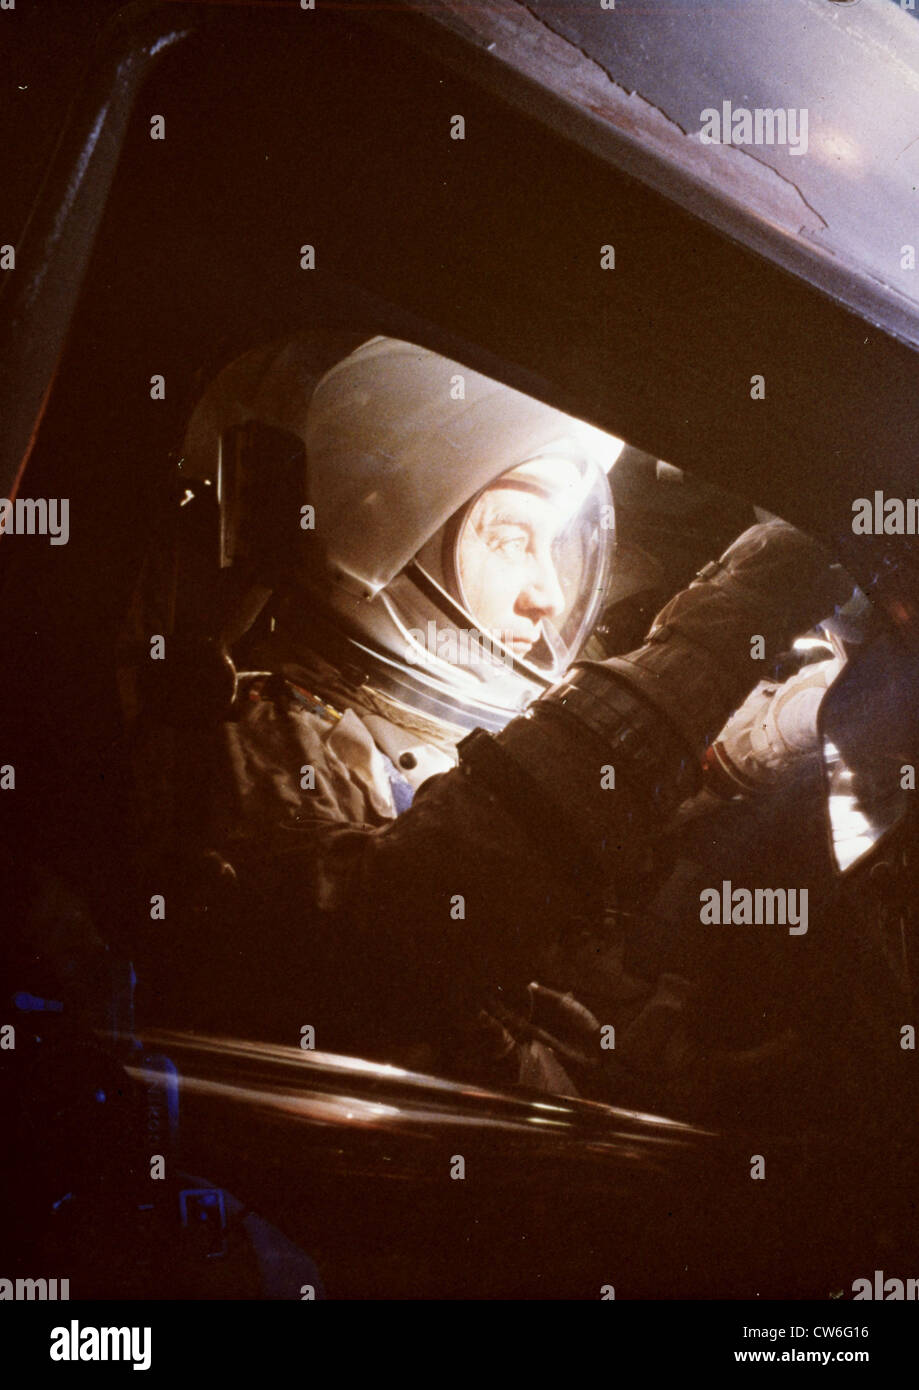 Apollo 1 missione, Virgilio I. "Gus' Grissom, il comando pilota per il primo volo con equipaggio dell'Apollo luna navicella spaziale (1966) Foto Stock